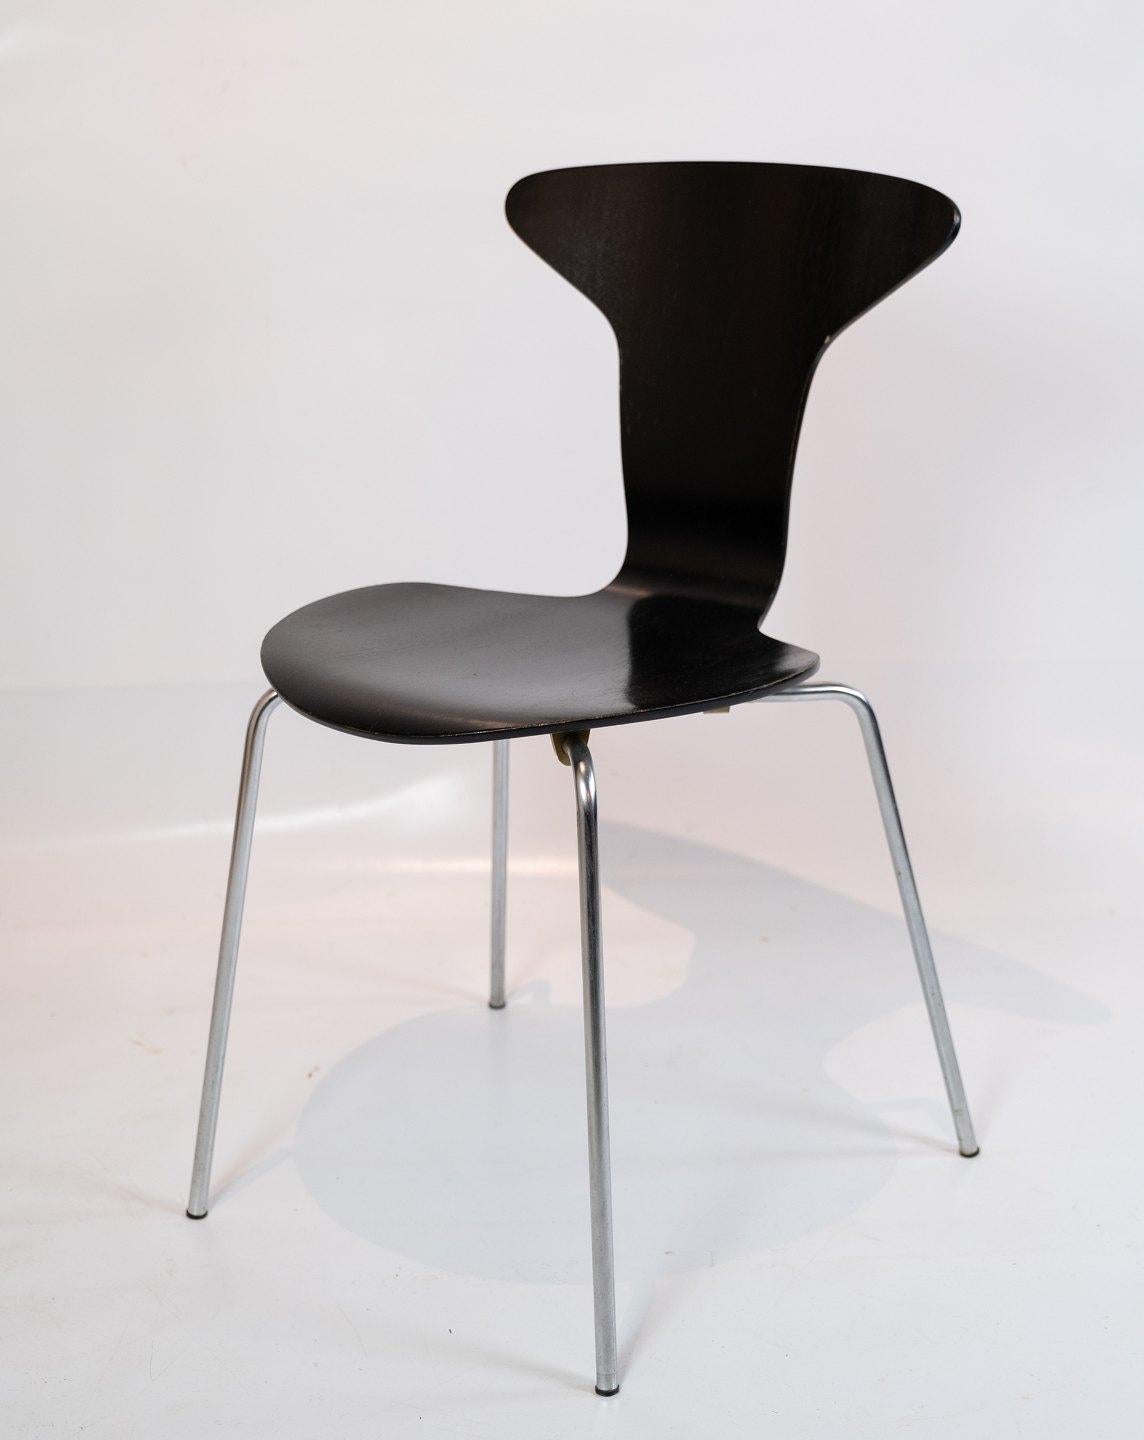 
Das Set aus 6 Munkegaard-Stühlen, die 1955 von der Ikone Arne Jacobsen entworfen wurden, ist der Inbegriff dänischer Designkompetenz. Diese mit viel Liebe zum Detail gefertigten Stühle sind eine zeitlose Darstellung des modernen Stils der